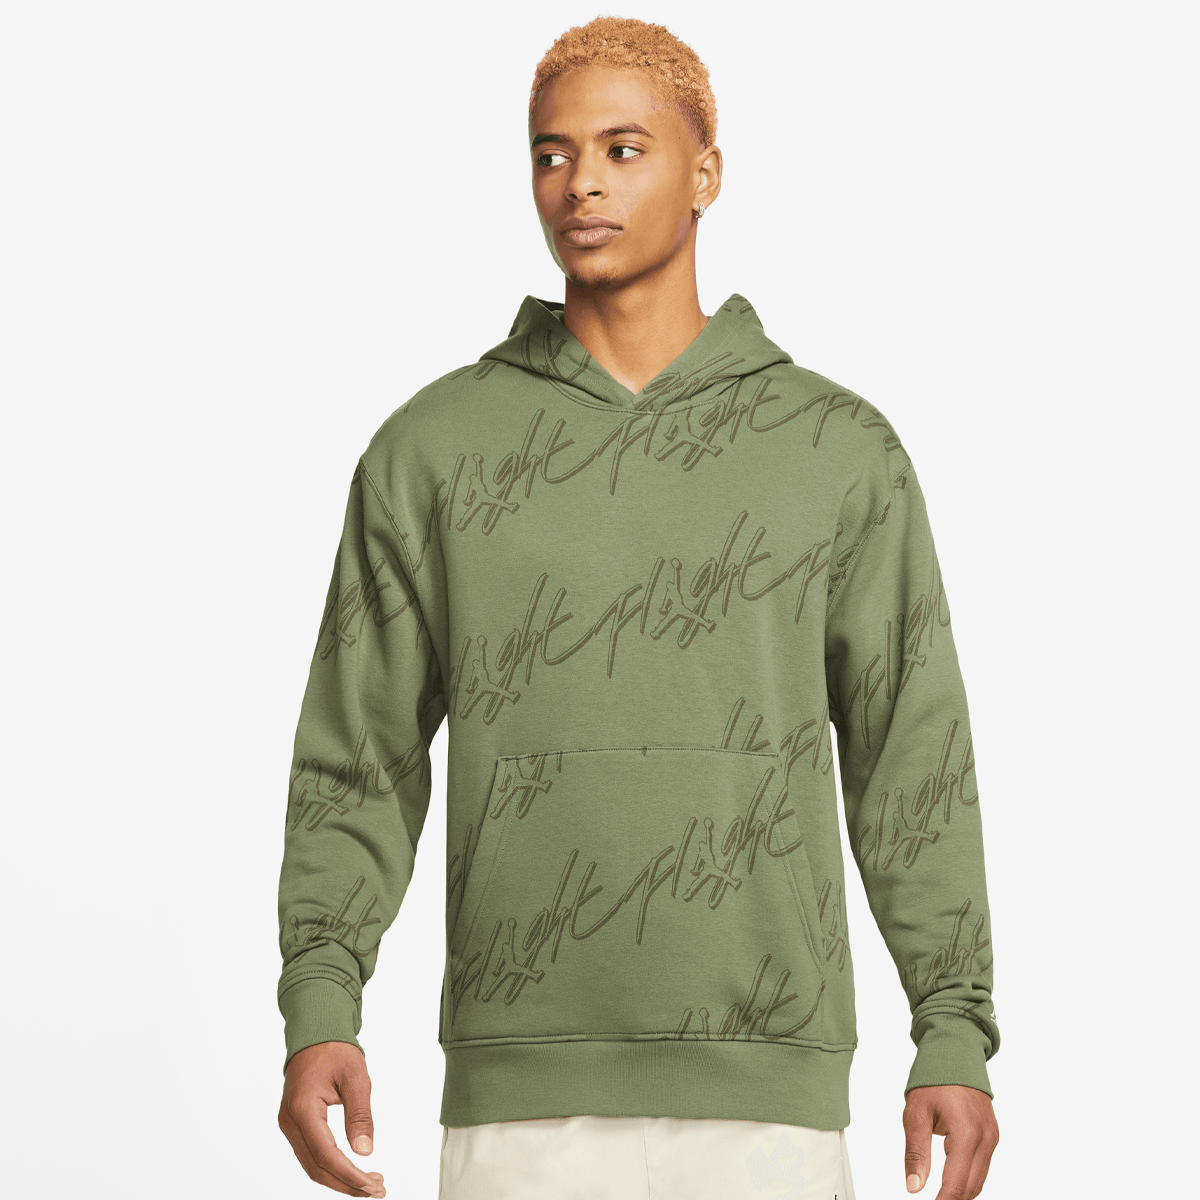 Jordan Essentials All Over Print Fleece Pullover Hoodies Heren sky j lt olive white maat: XL beschikbare maaten:S M L XL